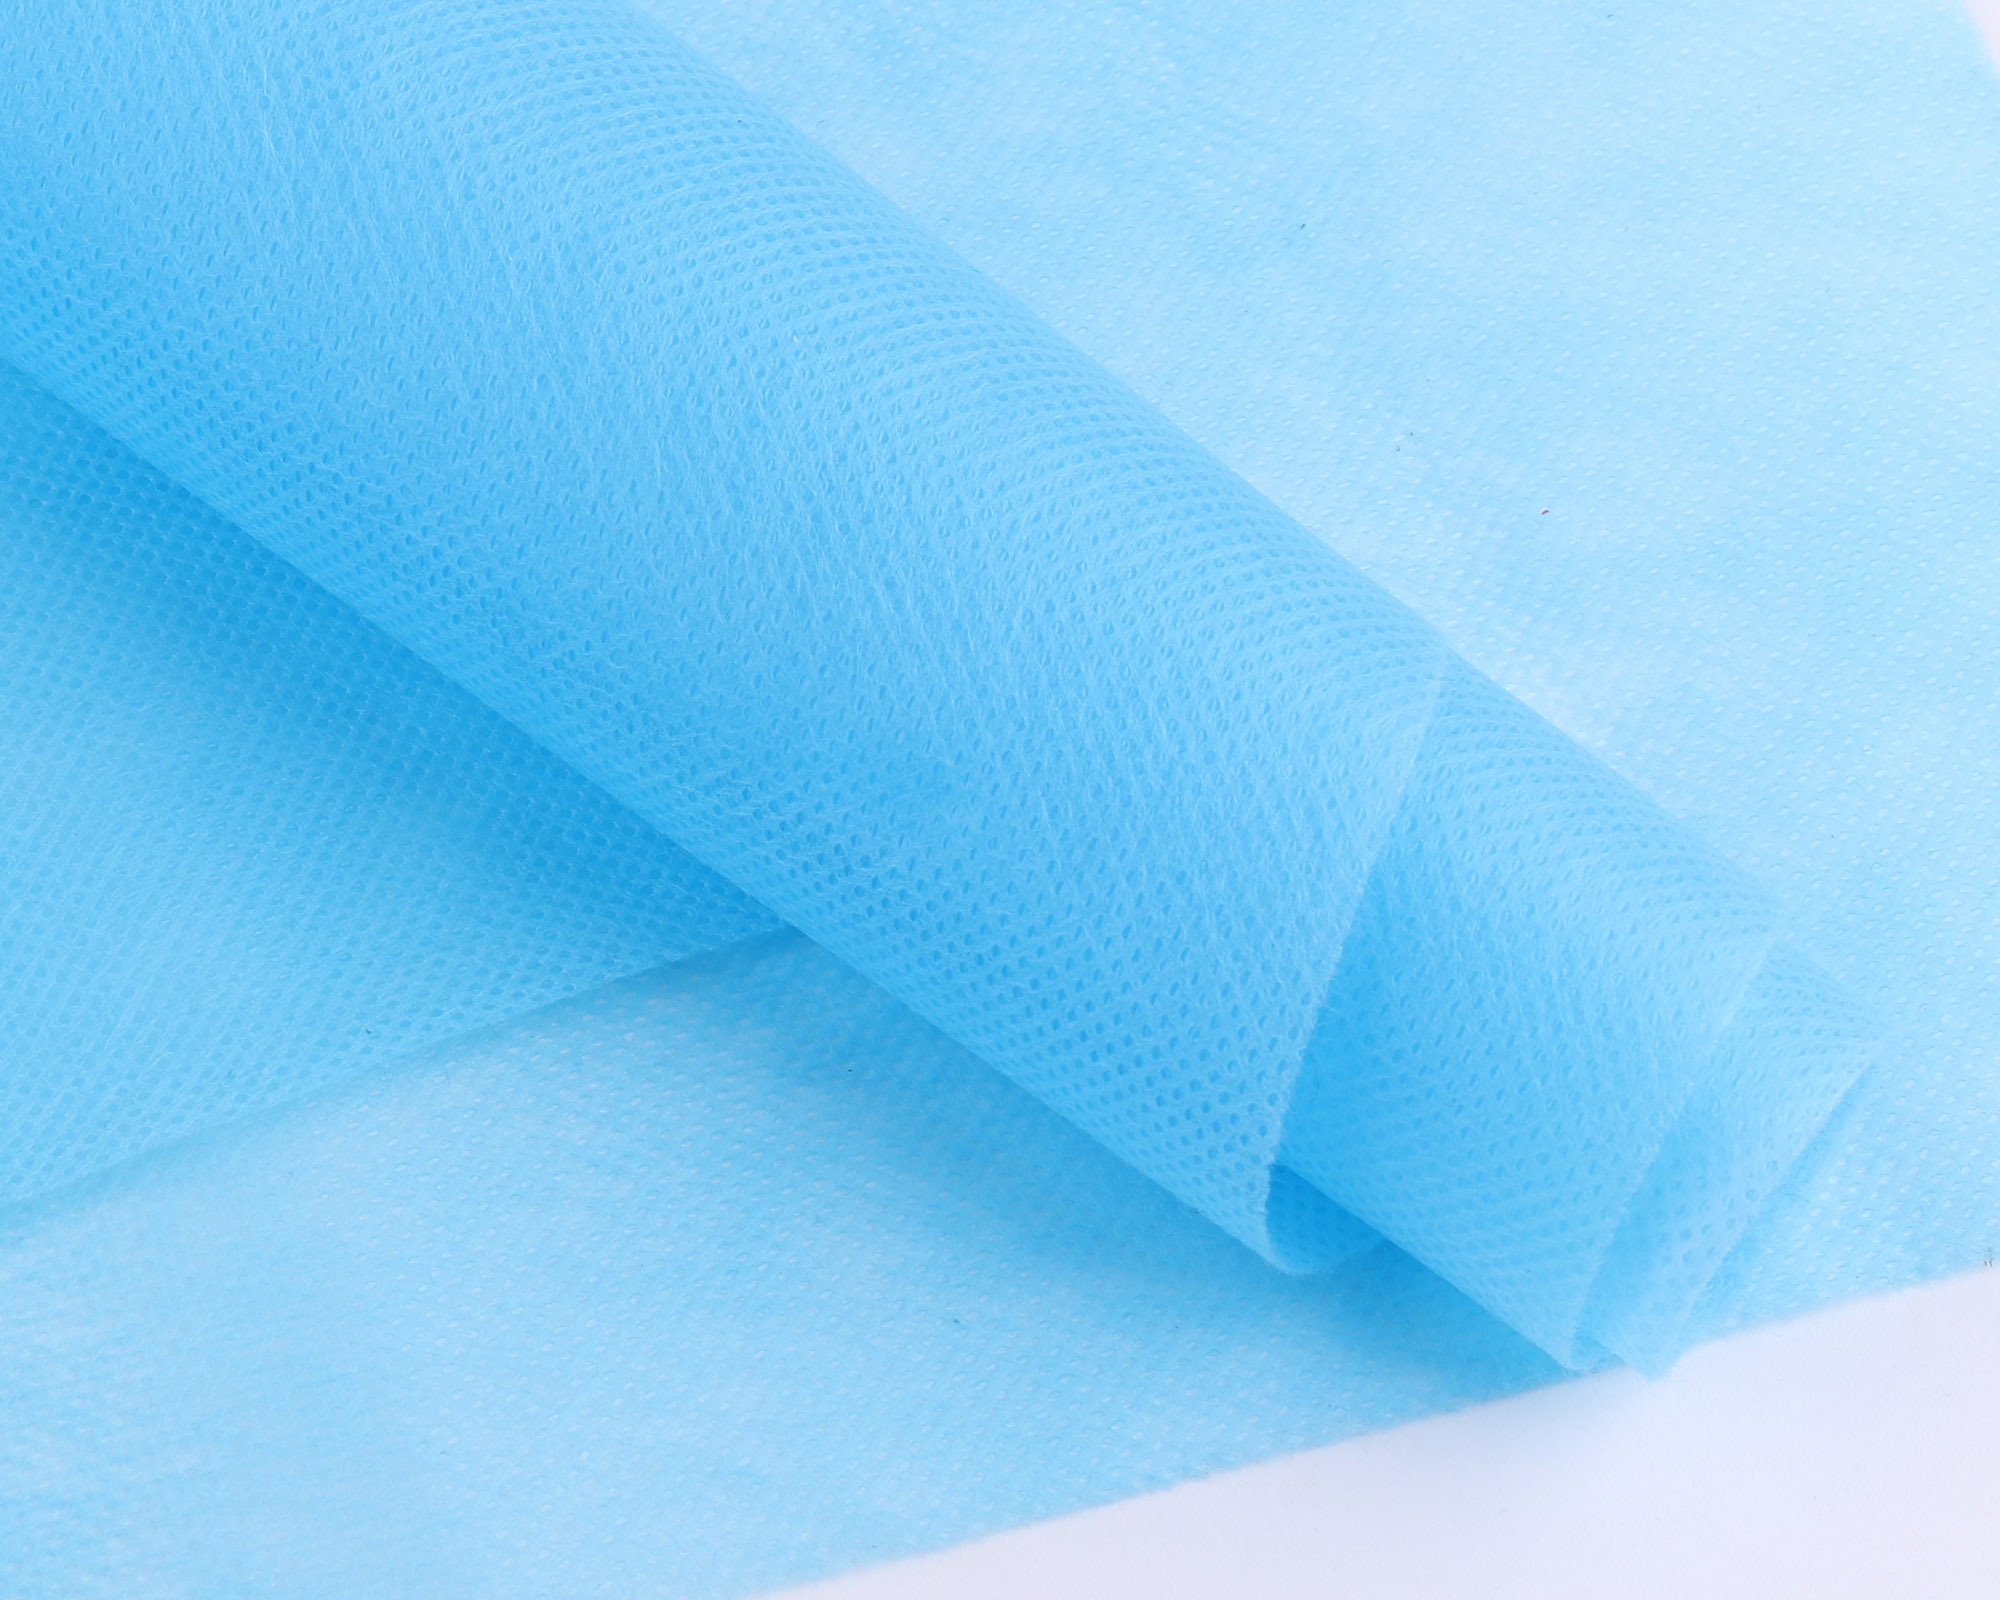 1-10y blue Non Woven fabricPolypropylene Melt Blown Non Woven | Etsy